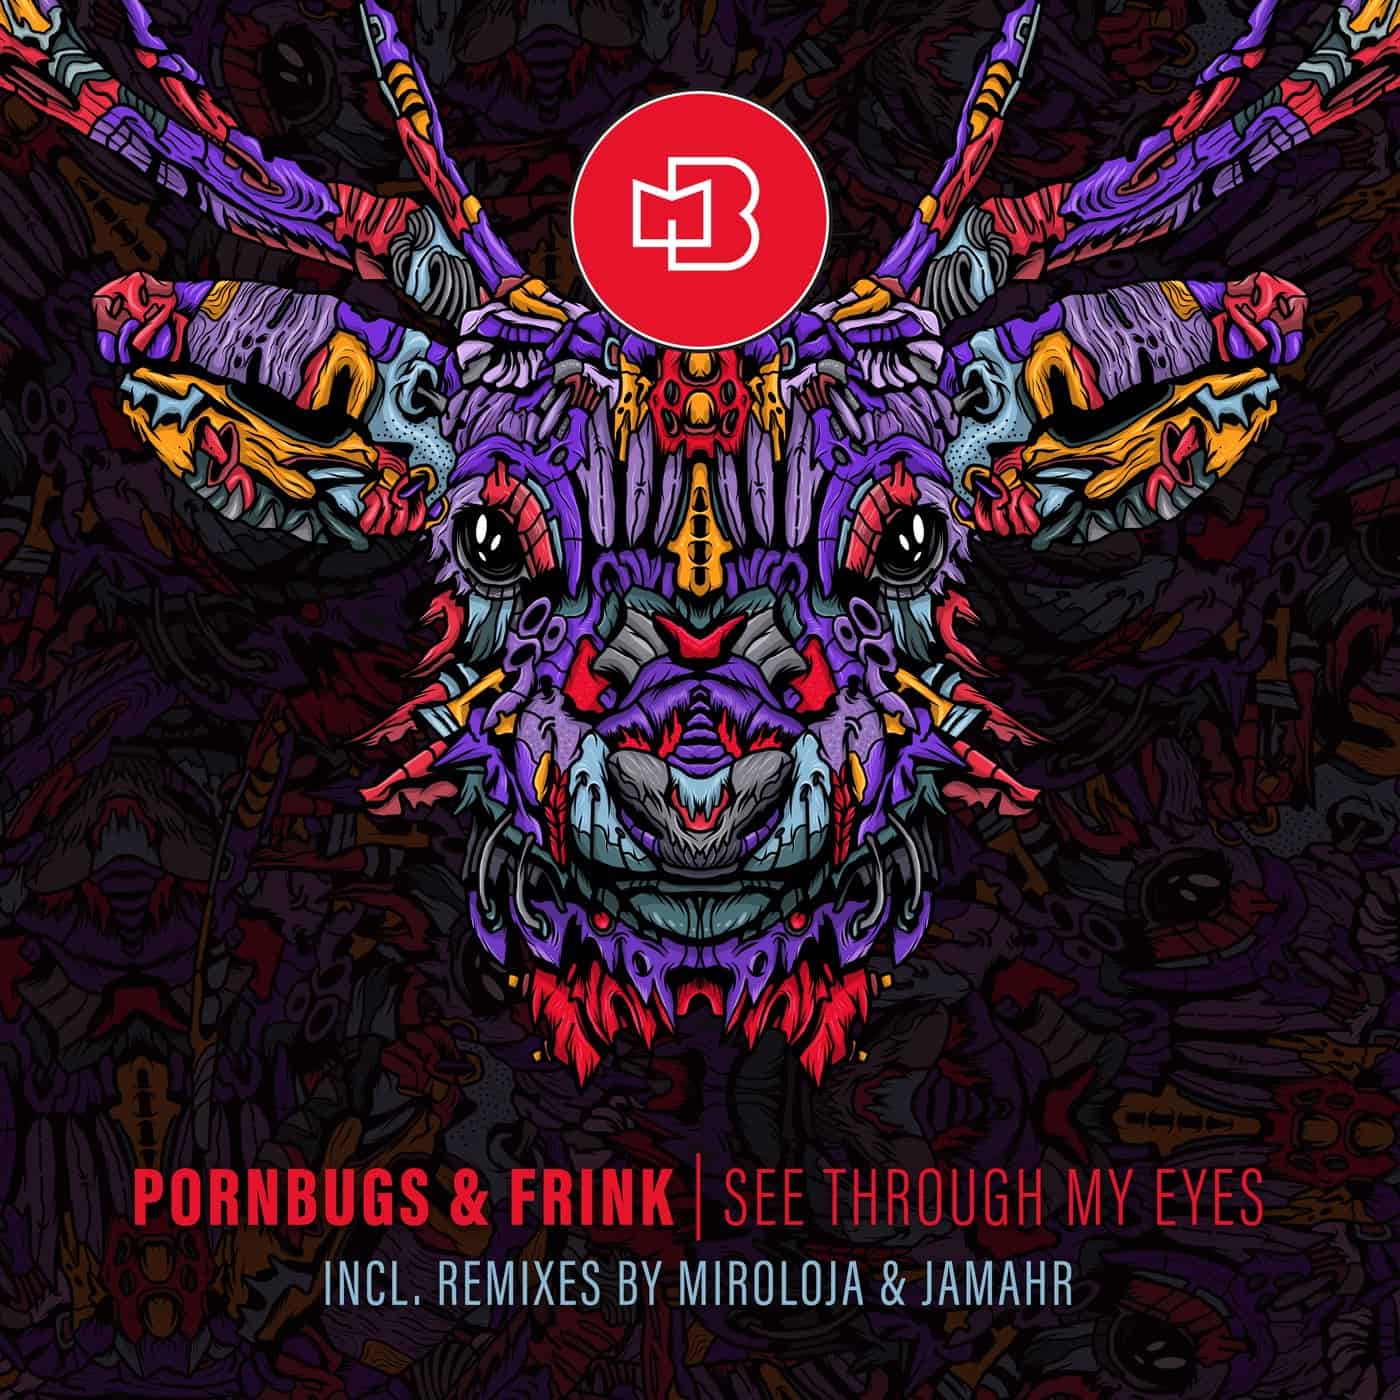 image cover: Pornbugs, Frink - See Through My Eyes on Bondage Music